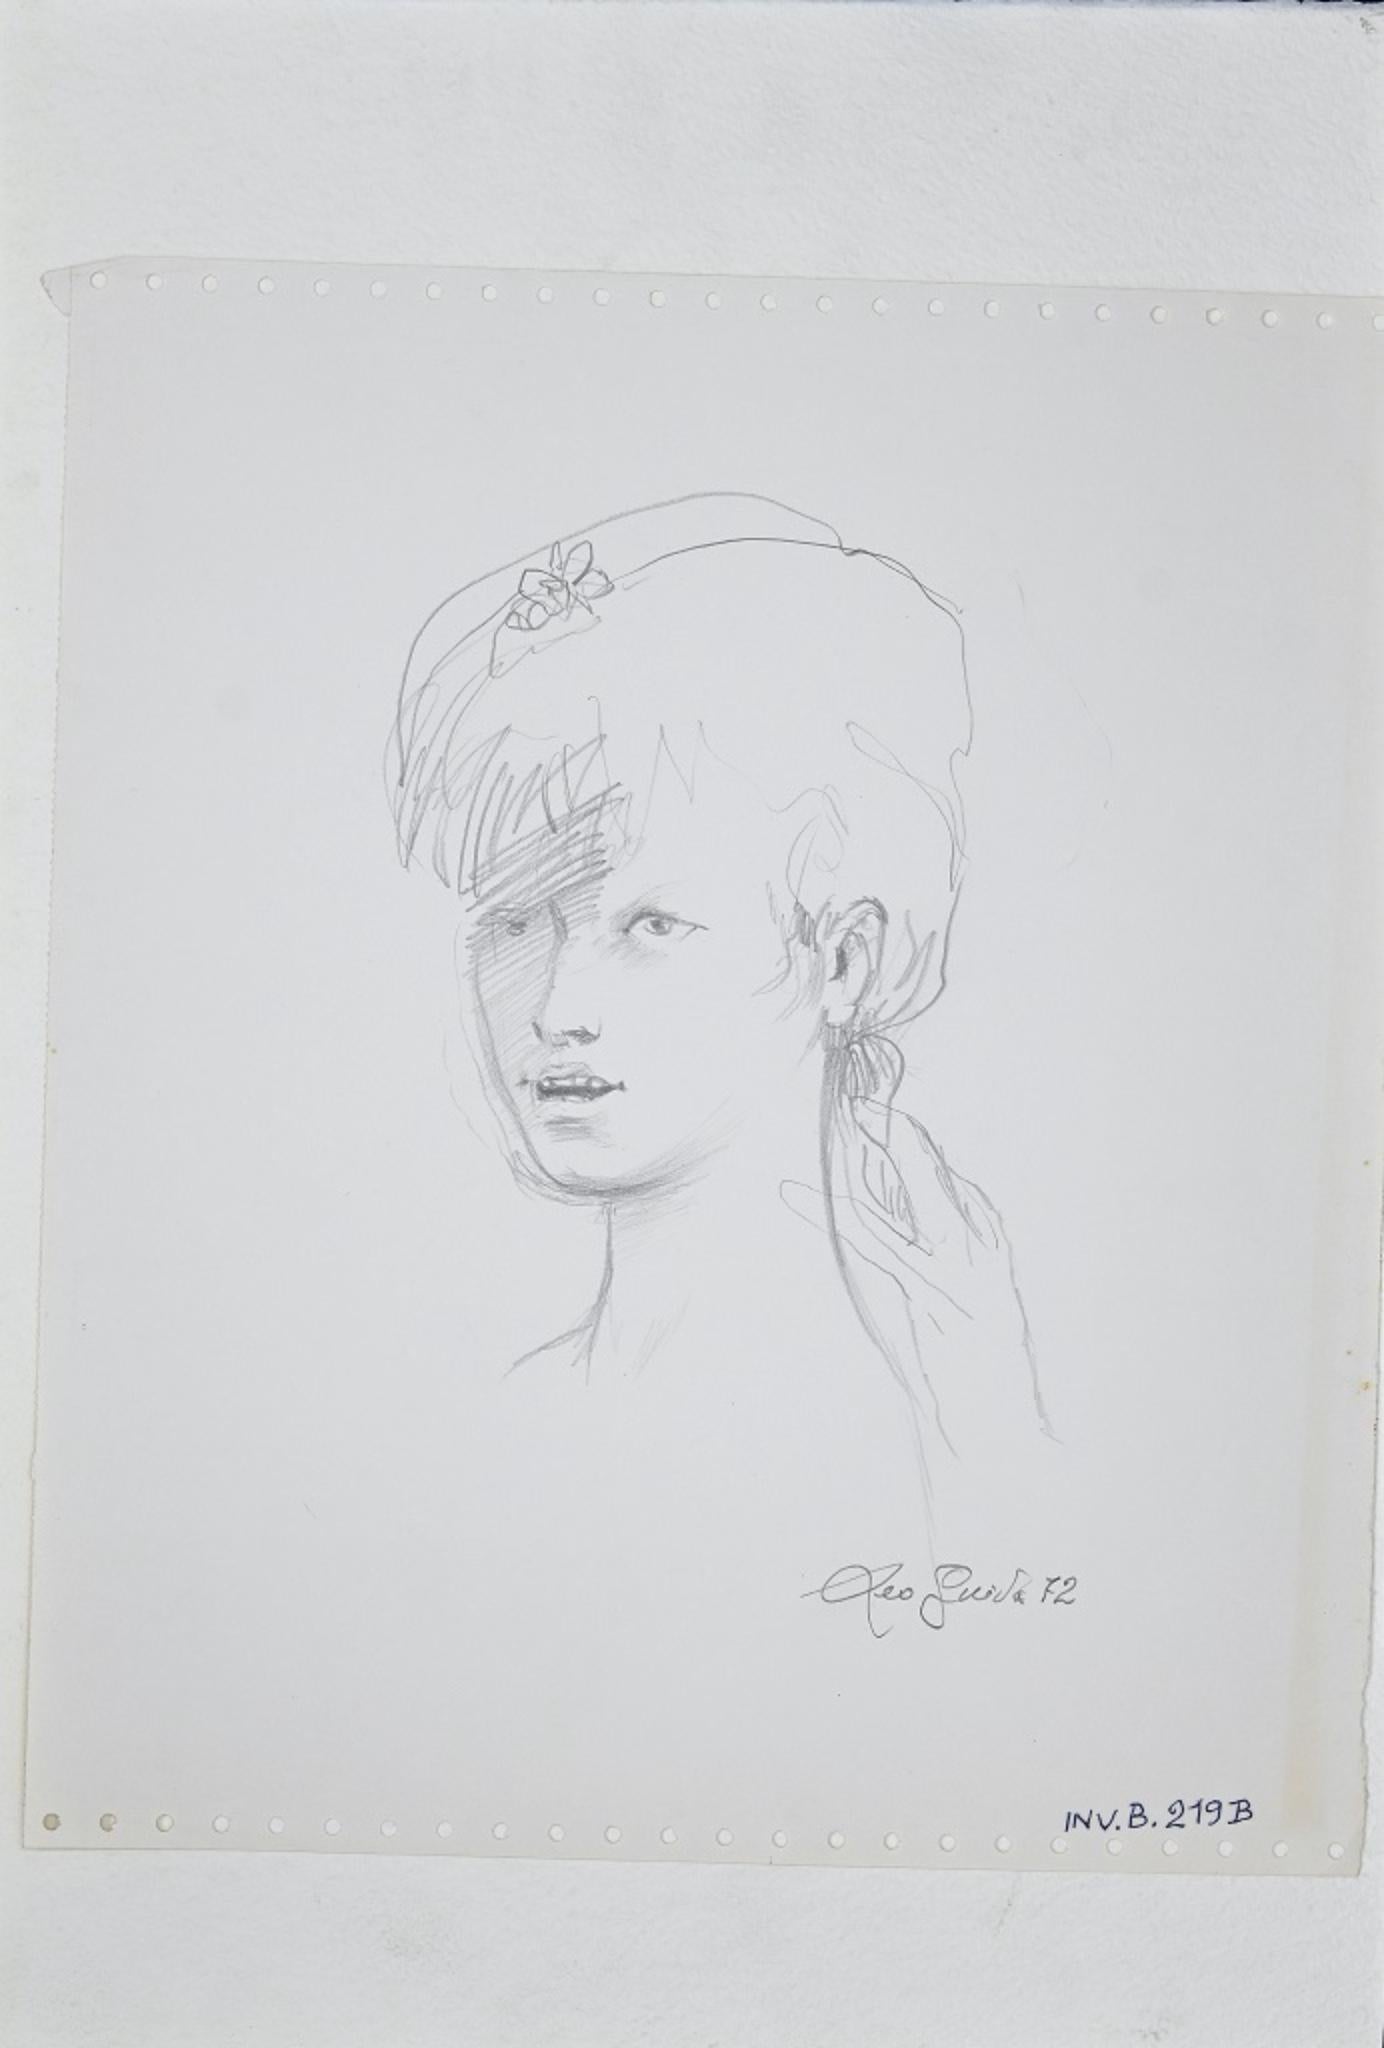 A Girl ist ein originales zeitgenössisches Kunstwerk des italienischen Künstlers Leo Guida aus dem Jahr 1972.

Handsigniert und datiert mit Bleistift in der unteren rechten Ecke: Leo Guida '72. 

Original-Zeichnung auf Papier. 

Die Zeichnung ist